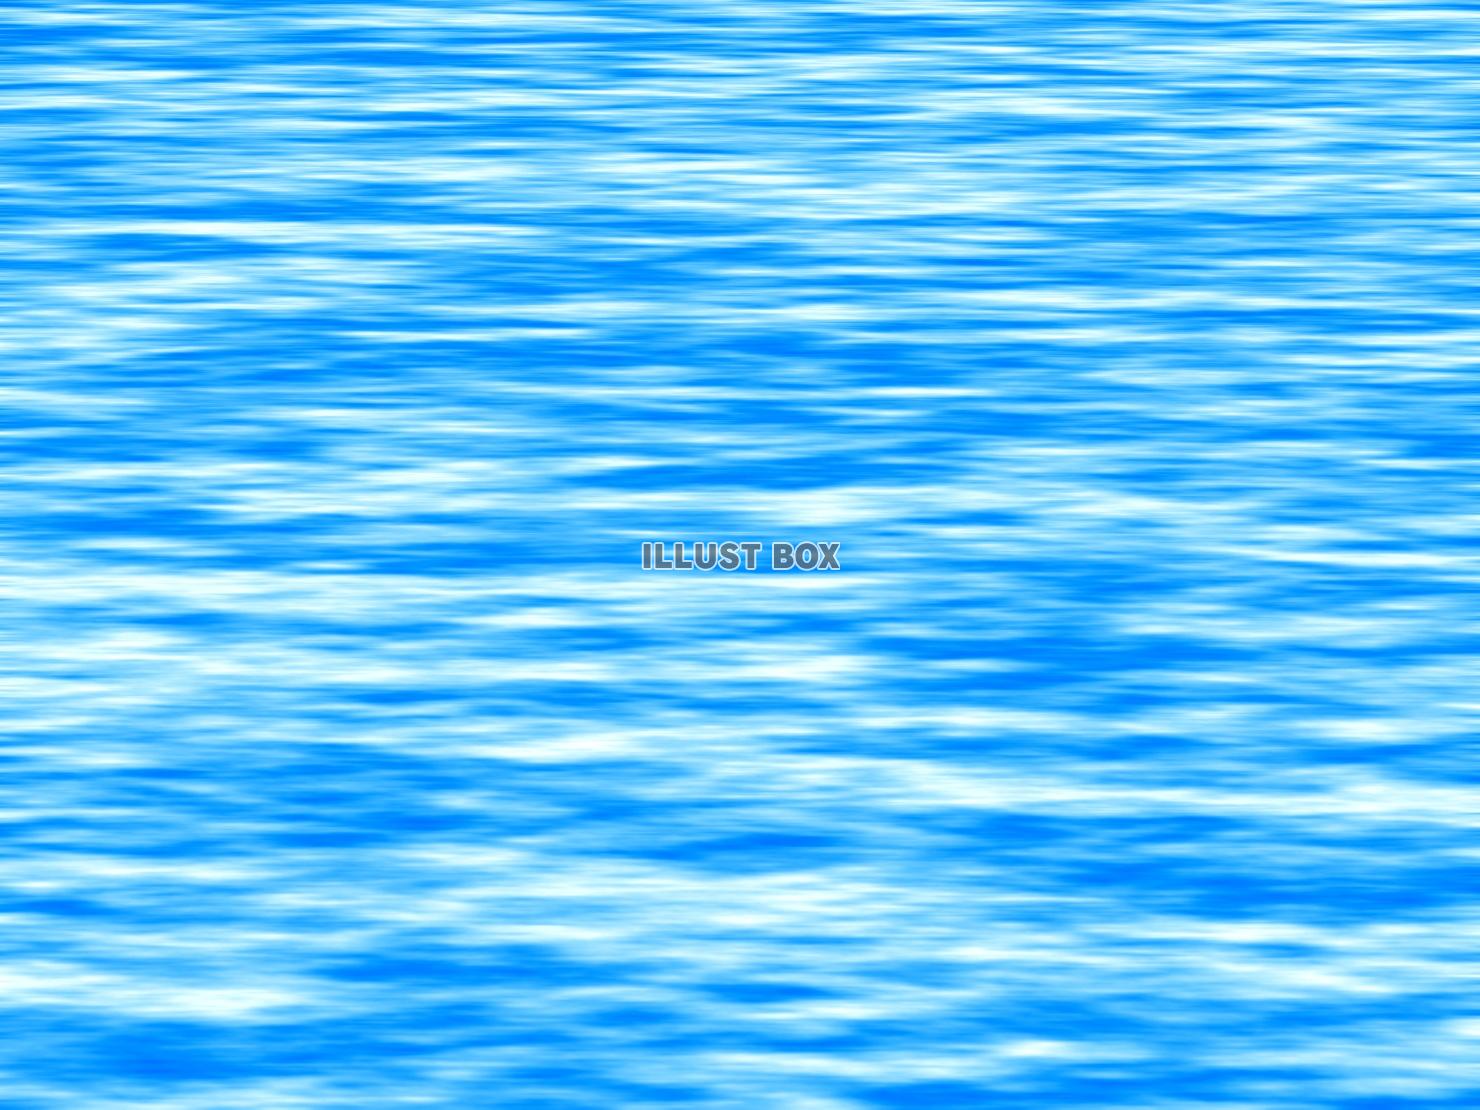 無料イラスト 海面の壁紙画像 波の風景背景素材イラスト